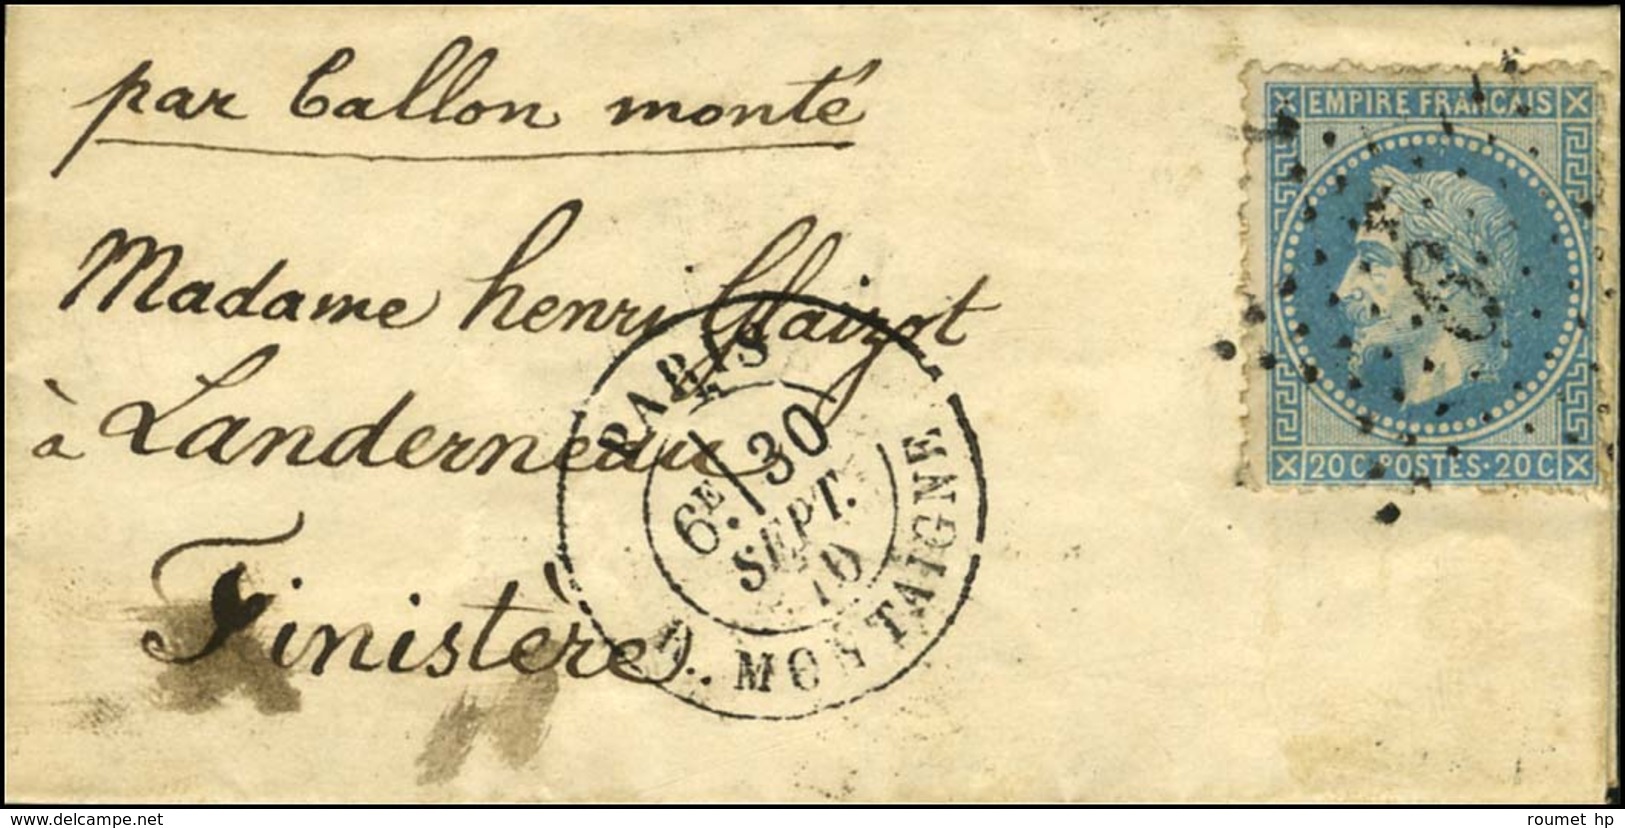 Etoile 9 / N° 29 Càd PARIS / R. MONTAIGNE 30 SEPT. 70 Sur Lettre Pour Landerneau. Au Verso, Cachet PARIS A RENNES 15 OCT - War 1870